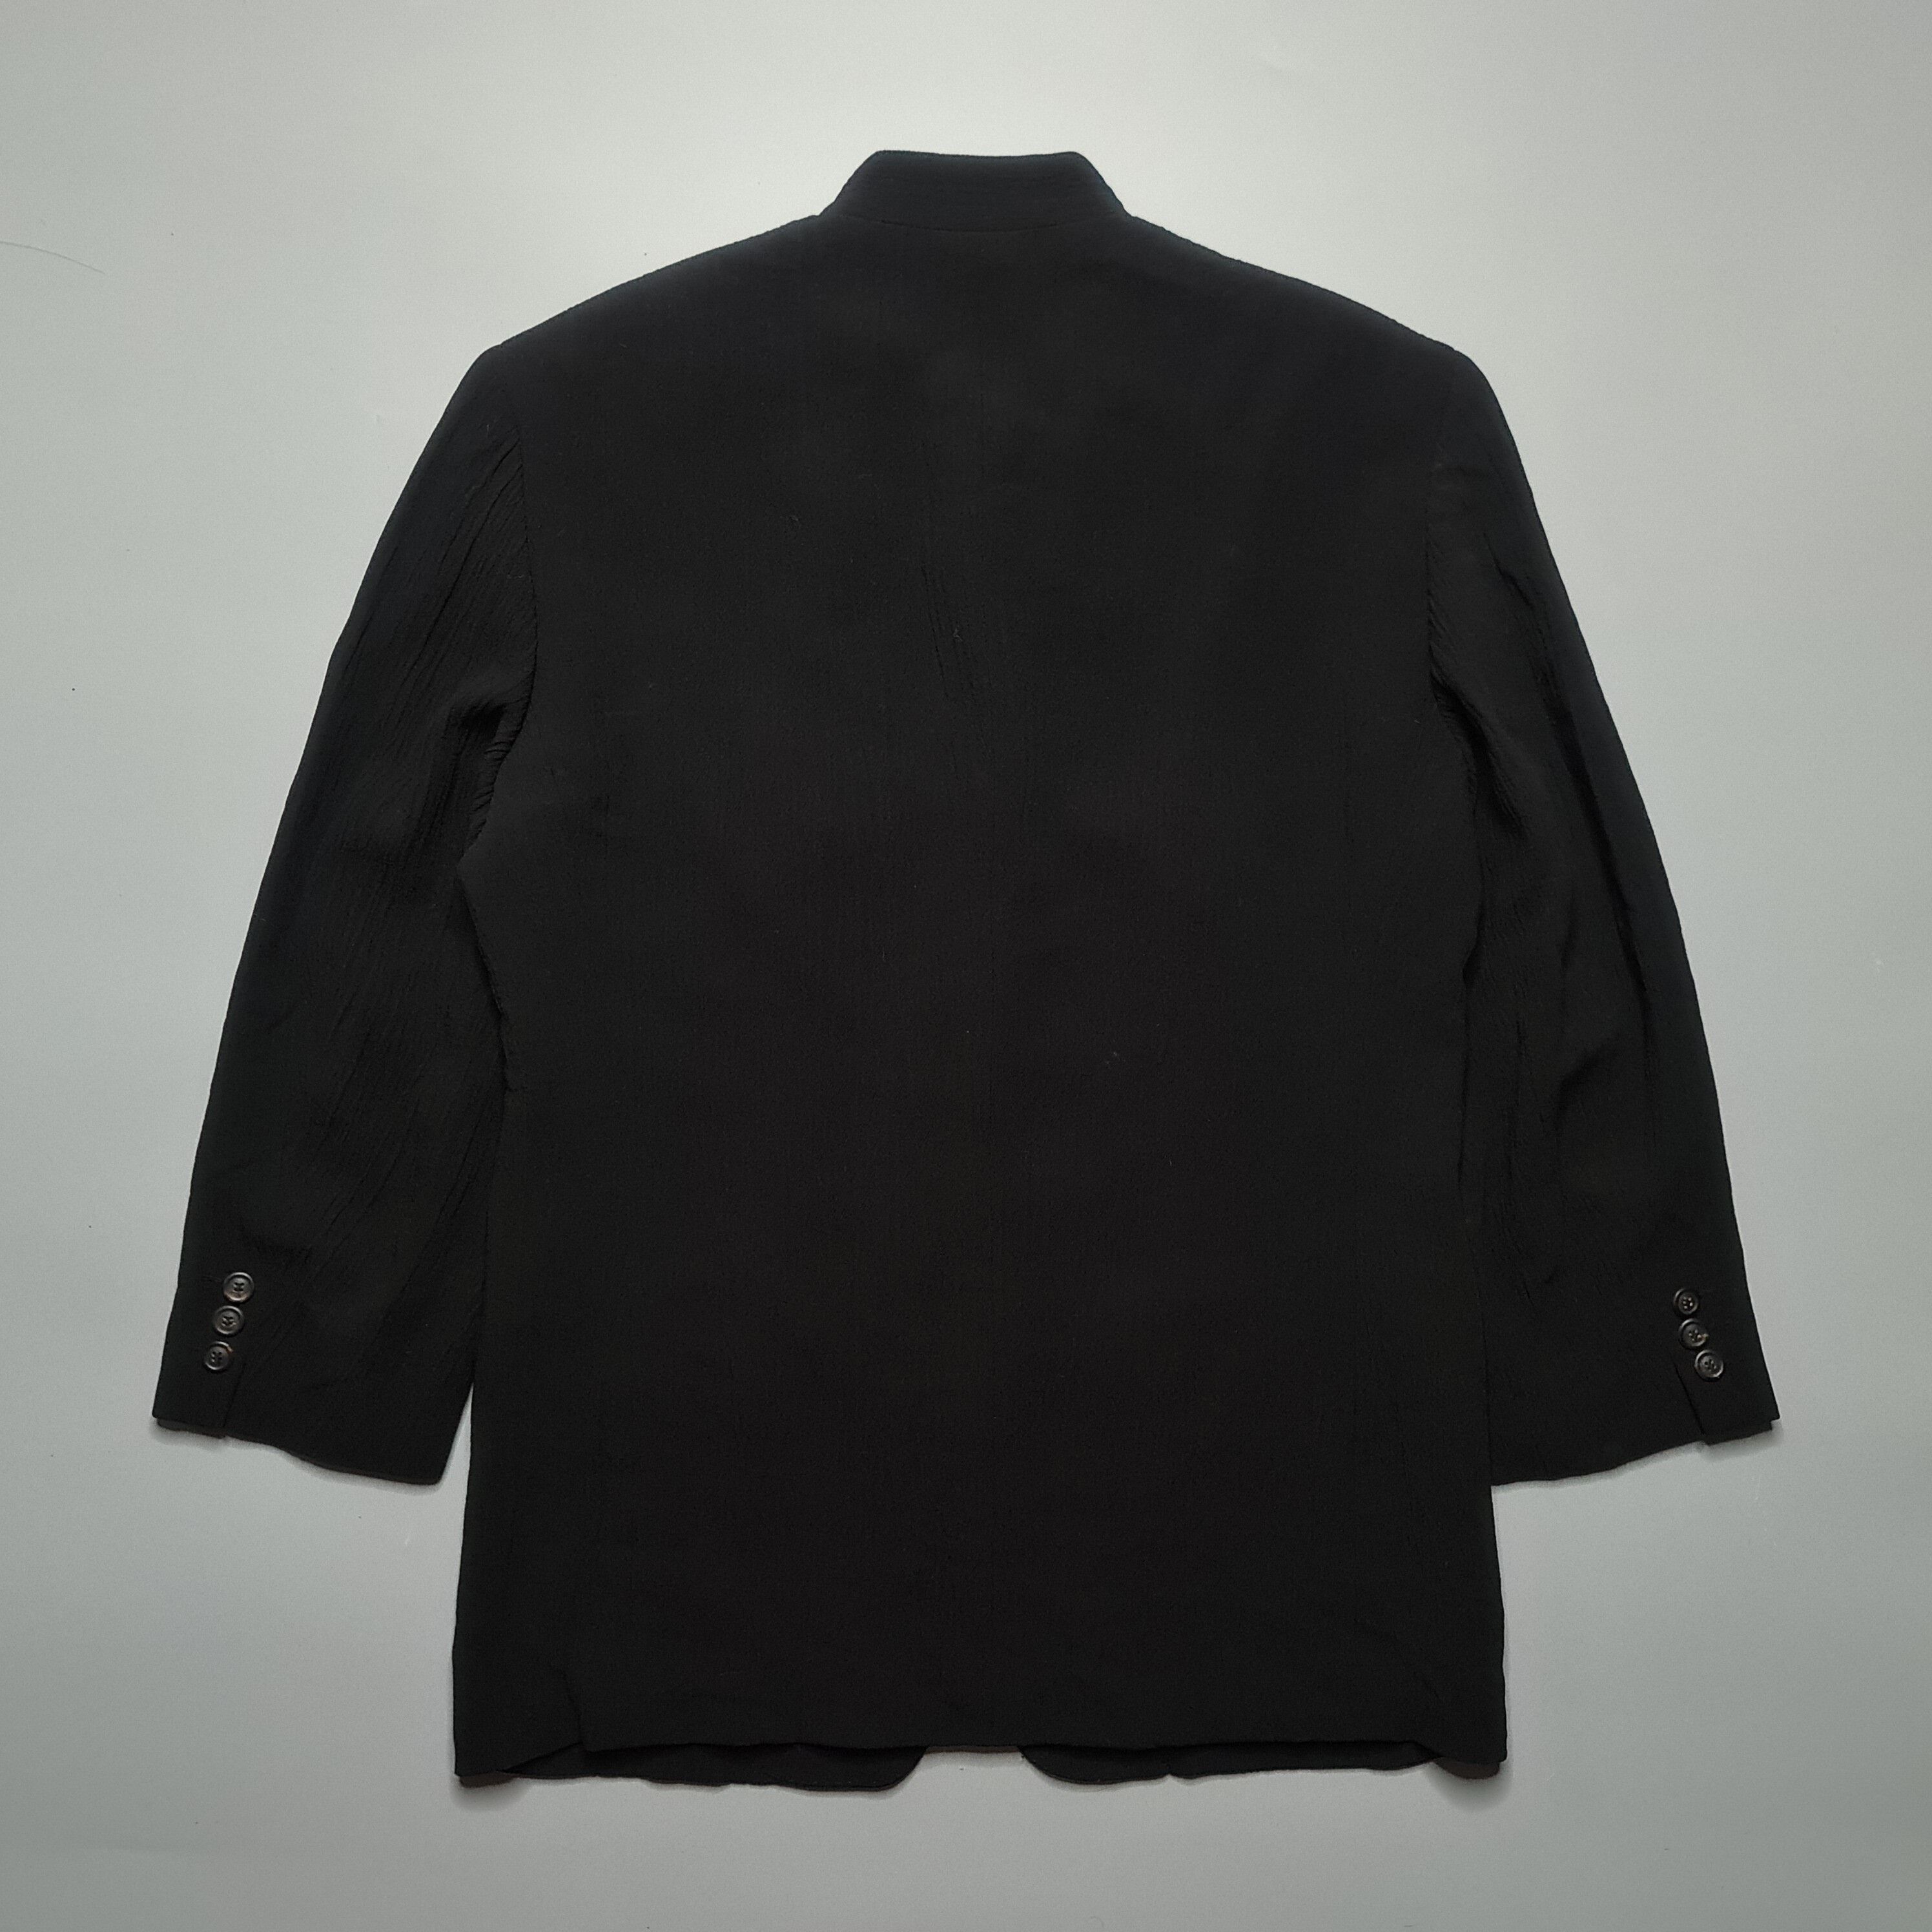 Issey Miyake - SS99 Mandarin Collar Wrinkled Wool Suit